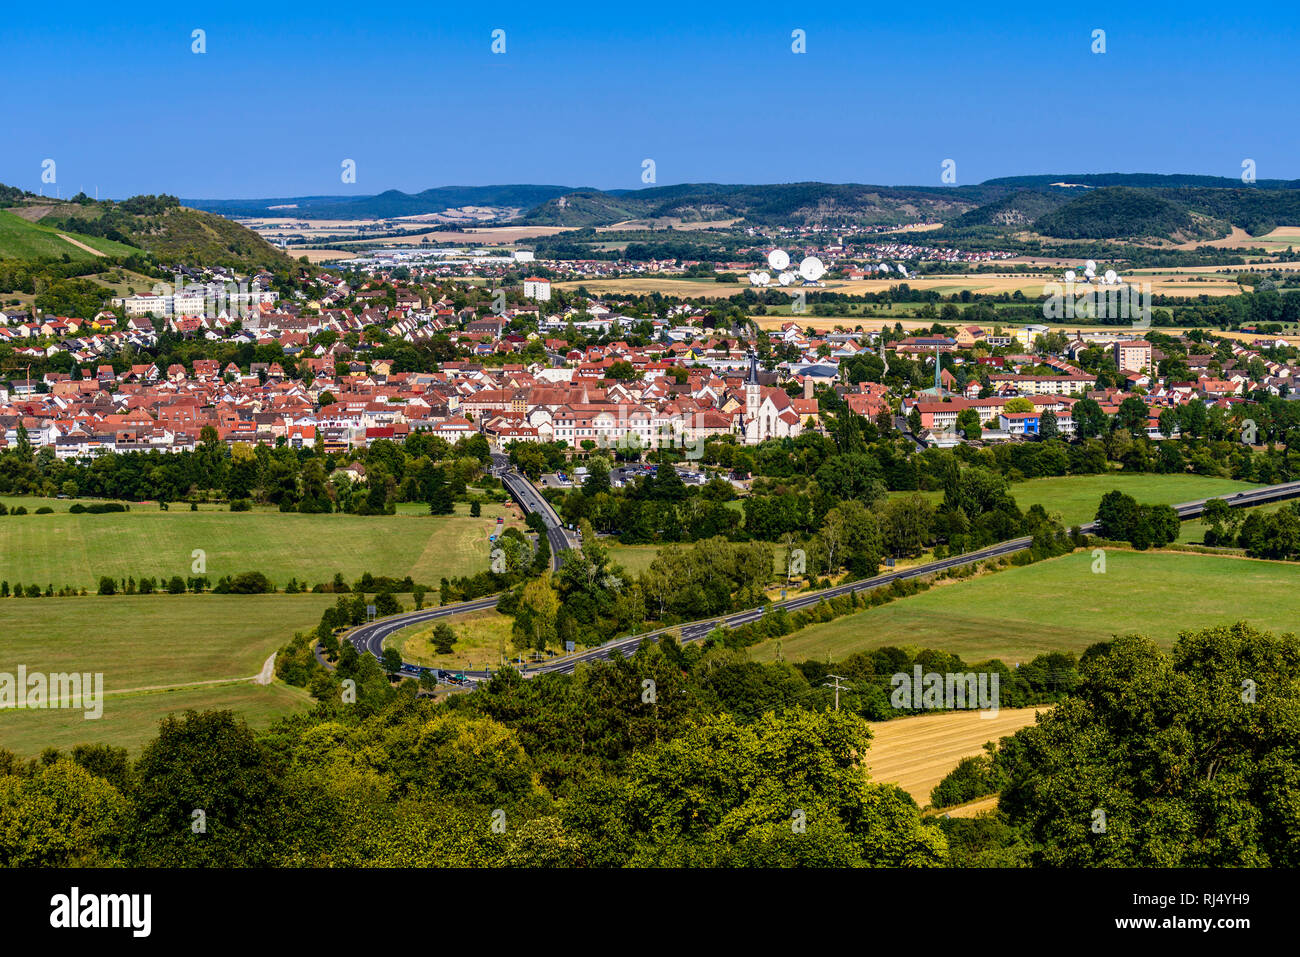 Deutschland, Bayern, Unterfranken, Fr?nkisches Saaletal, Hammelburg, Ortsansicht mit Saaletal, Blick von Schloss Saaleck Foto Stock